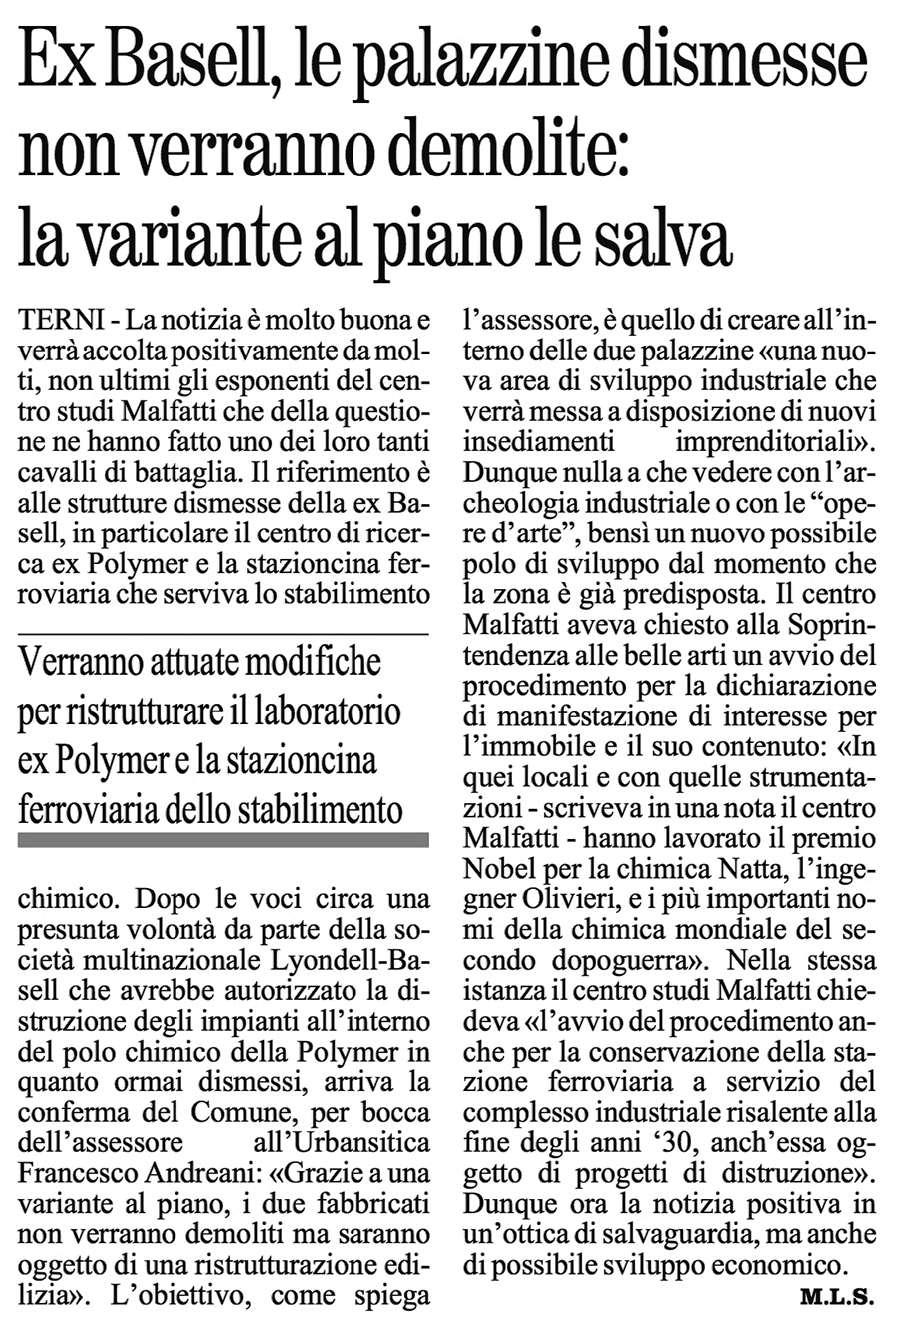 Il Giornale dell'Umbria 27-06-2015 p. 21